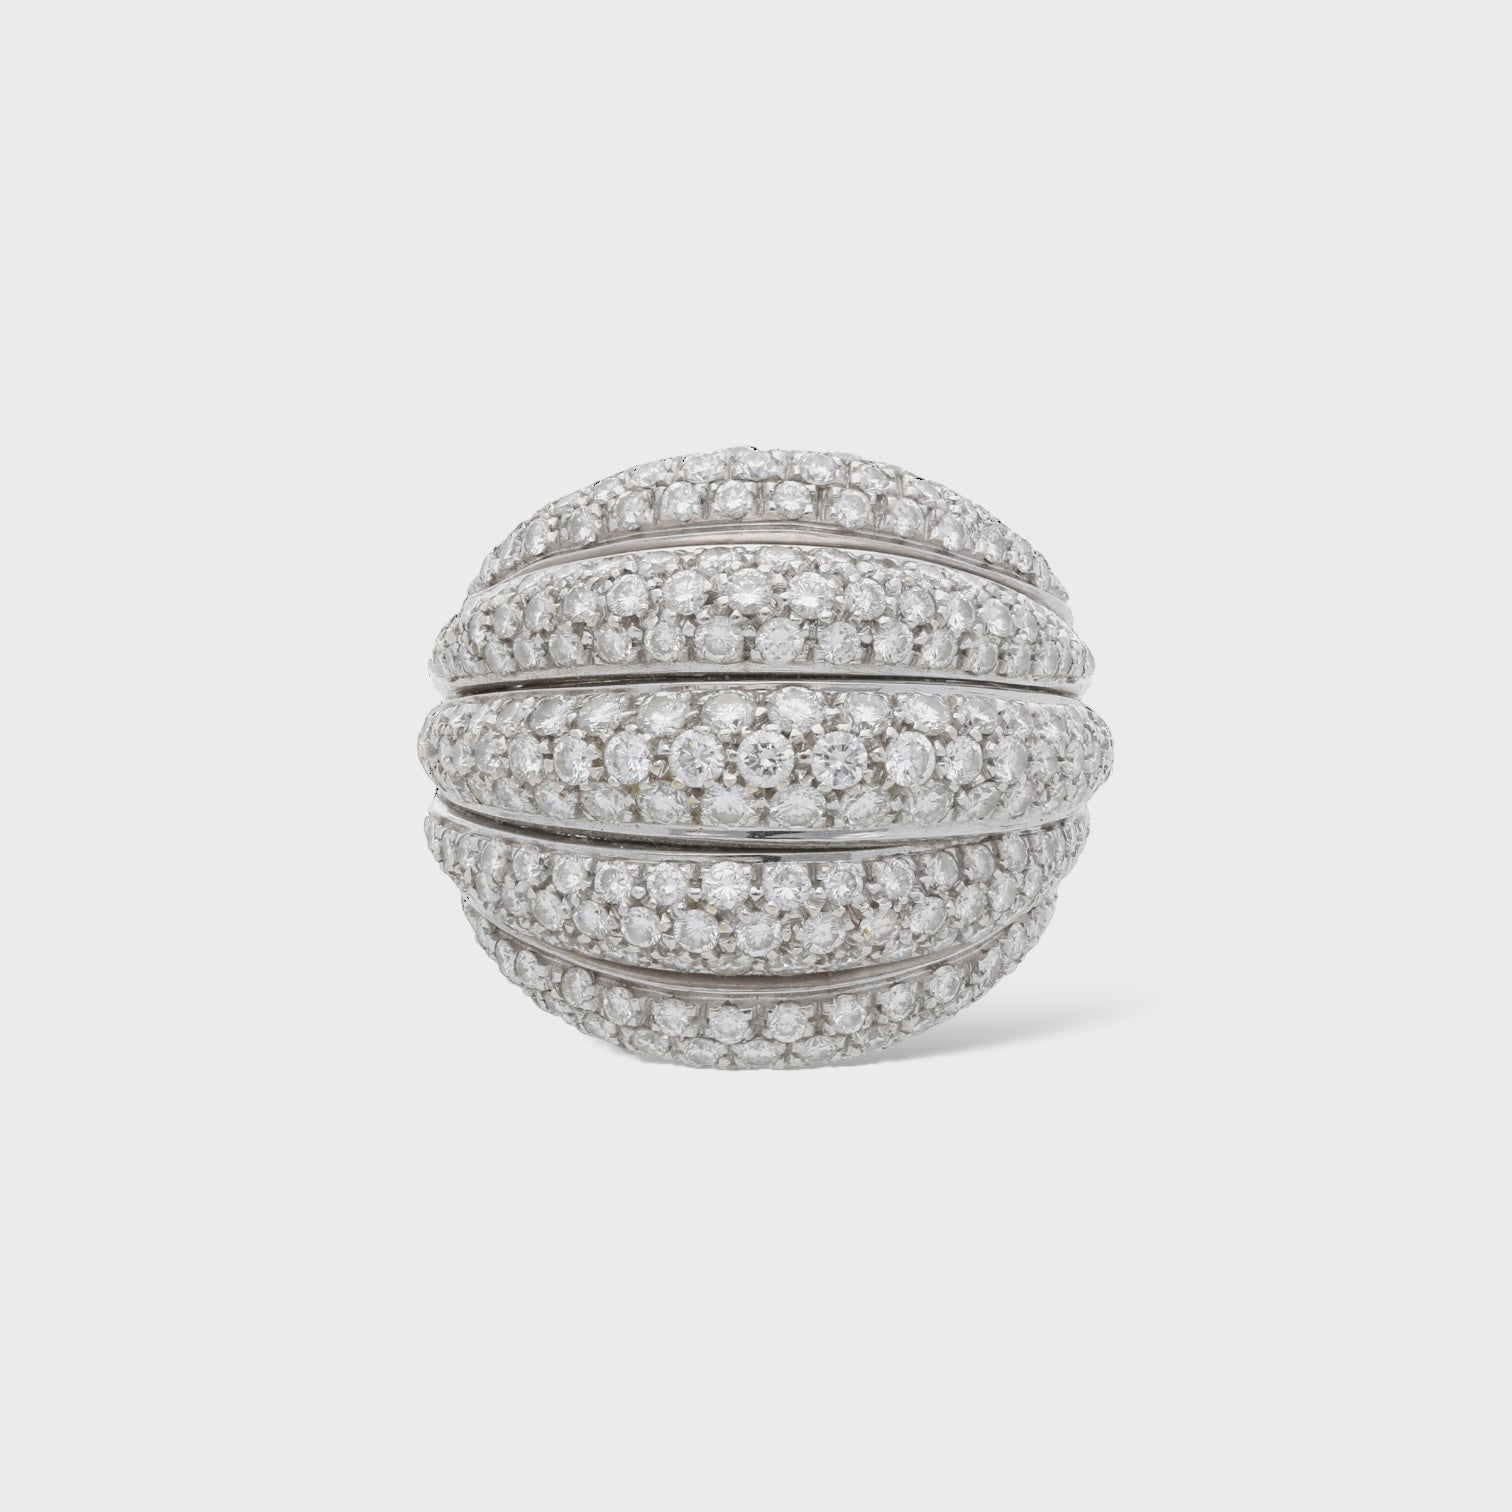 Second Hand Diamant Ring online kaufen auf kaleaz.